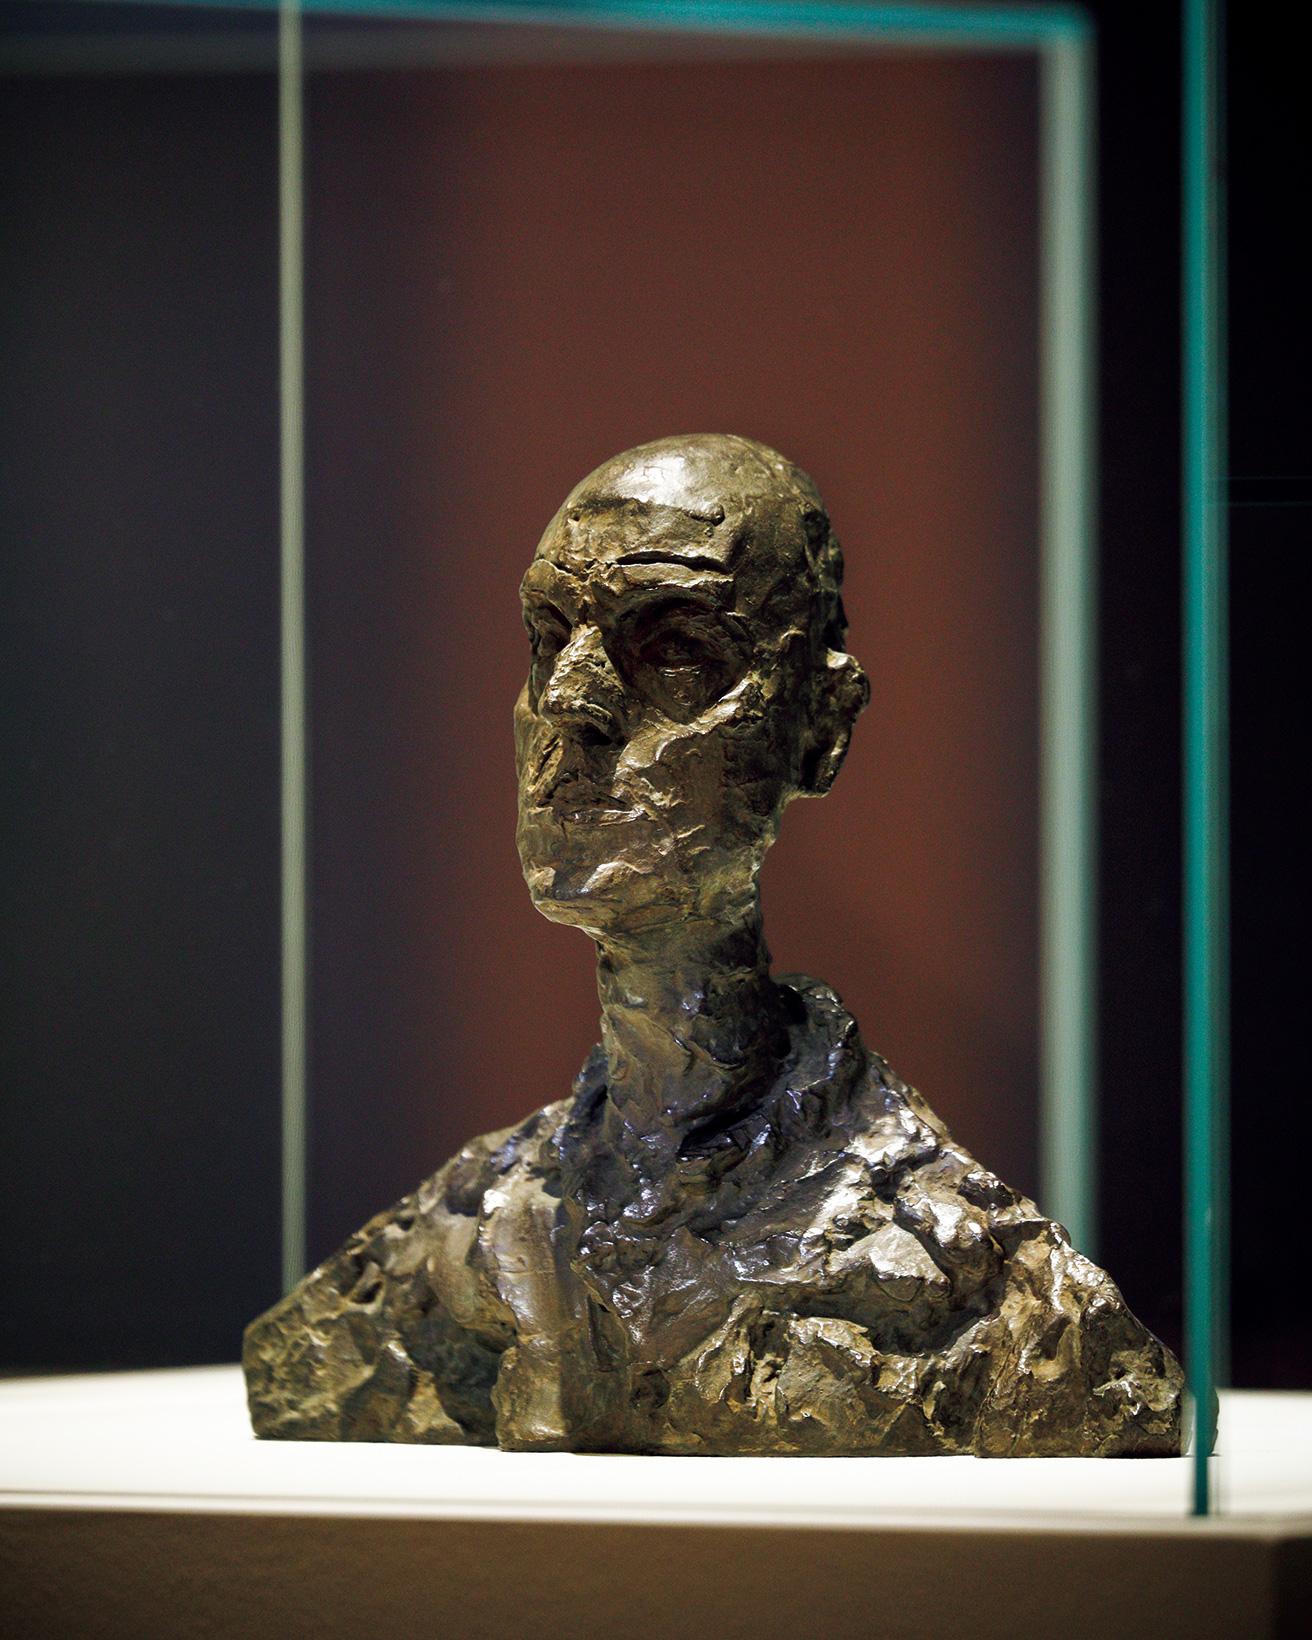 《男の頭部（ロタールⅠ）》（1964-65年）。ルーマニア出身の前衛写真家エリ・ロタールは、ジャコメッティ最後の彫刻作品のモデルとなり、3つの作品となった。《男の頭部（ロタールⅠ）》は頭部と肩のみからなる、もっとも小さな作品。凝縮したサイズで触覚に訴える作品からは、正面切った自信が感じられる。